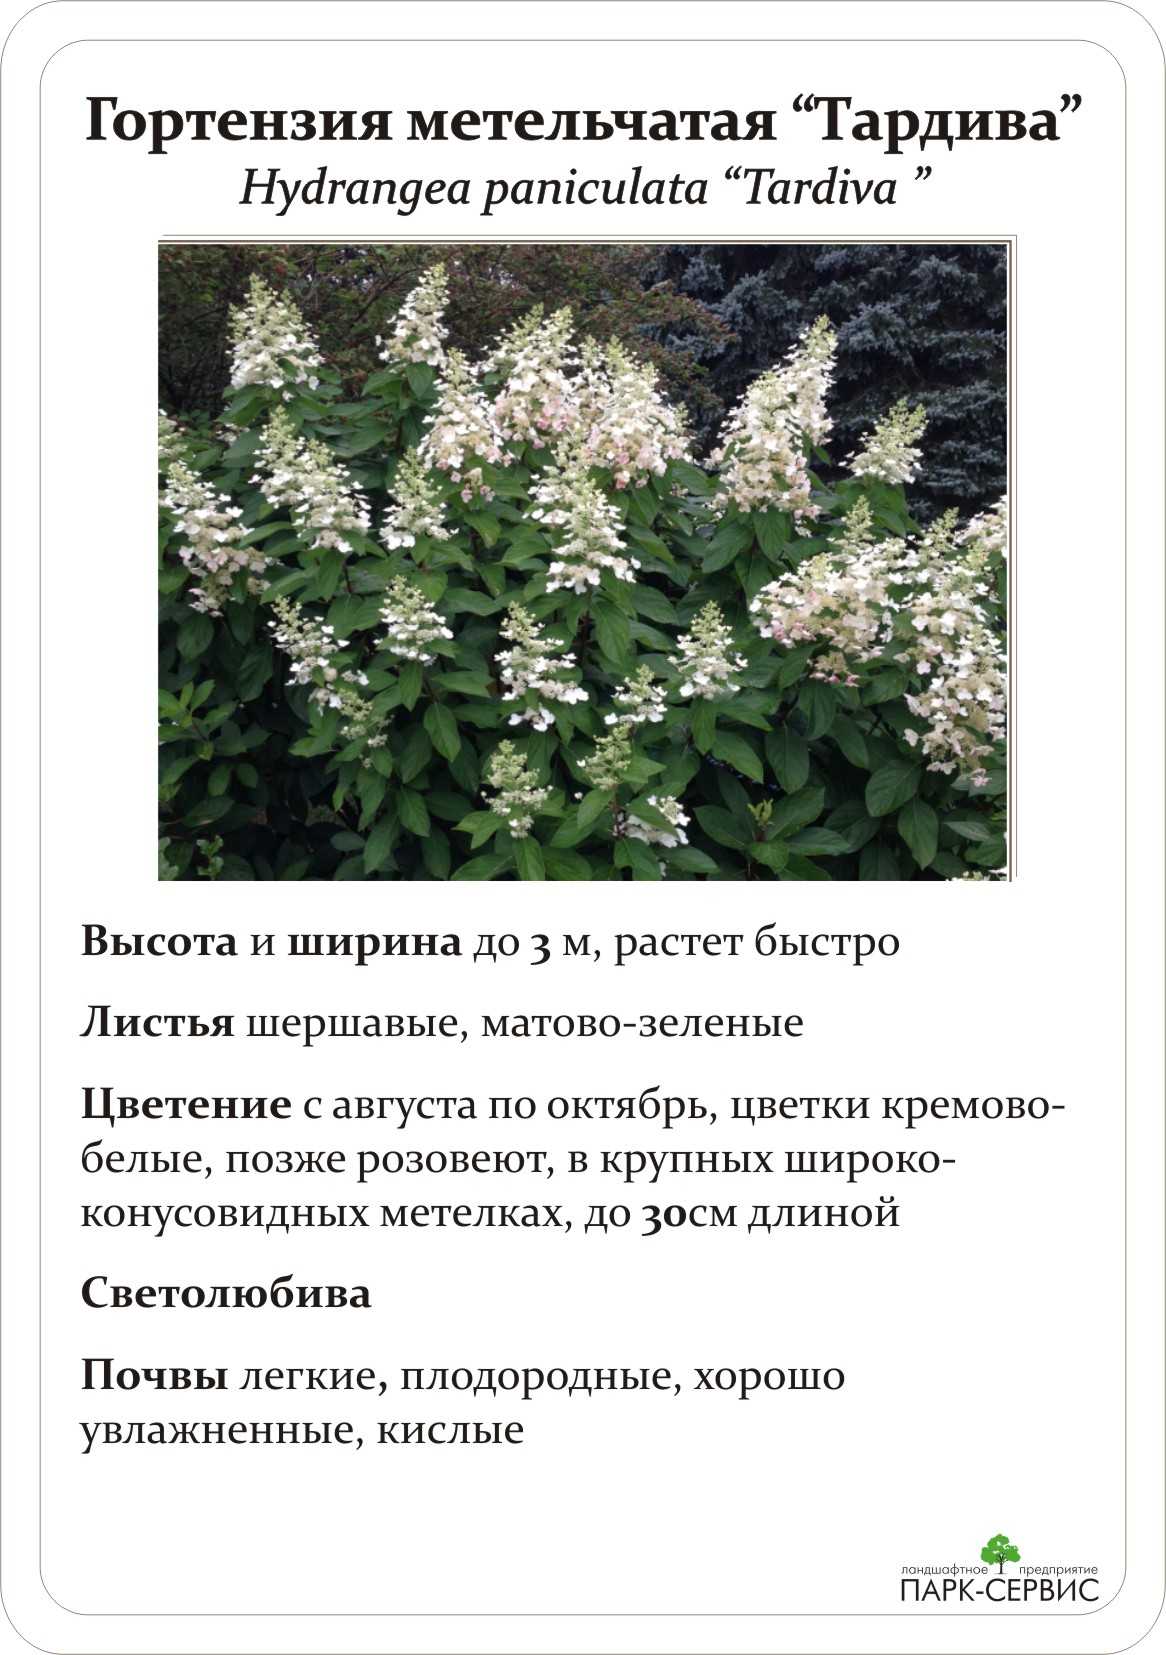 Гортензия метельчатая тардива (hydrangea paniculata tardiva): описание, уход в открытом грунте, фото -